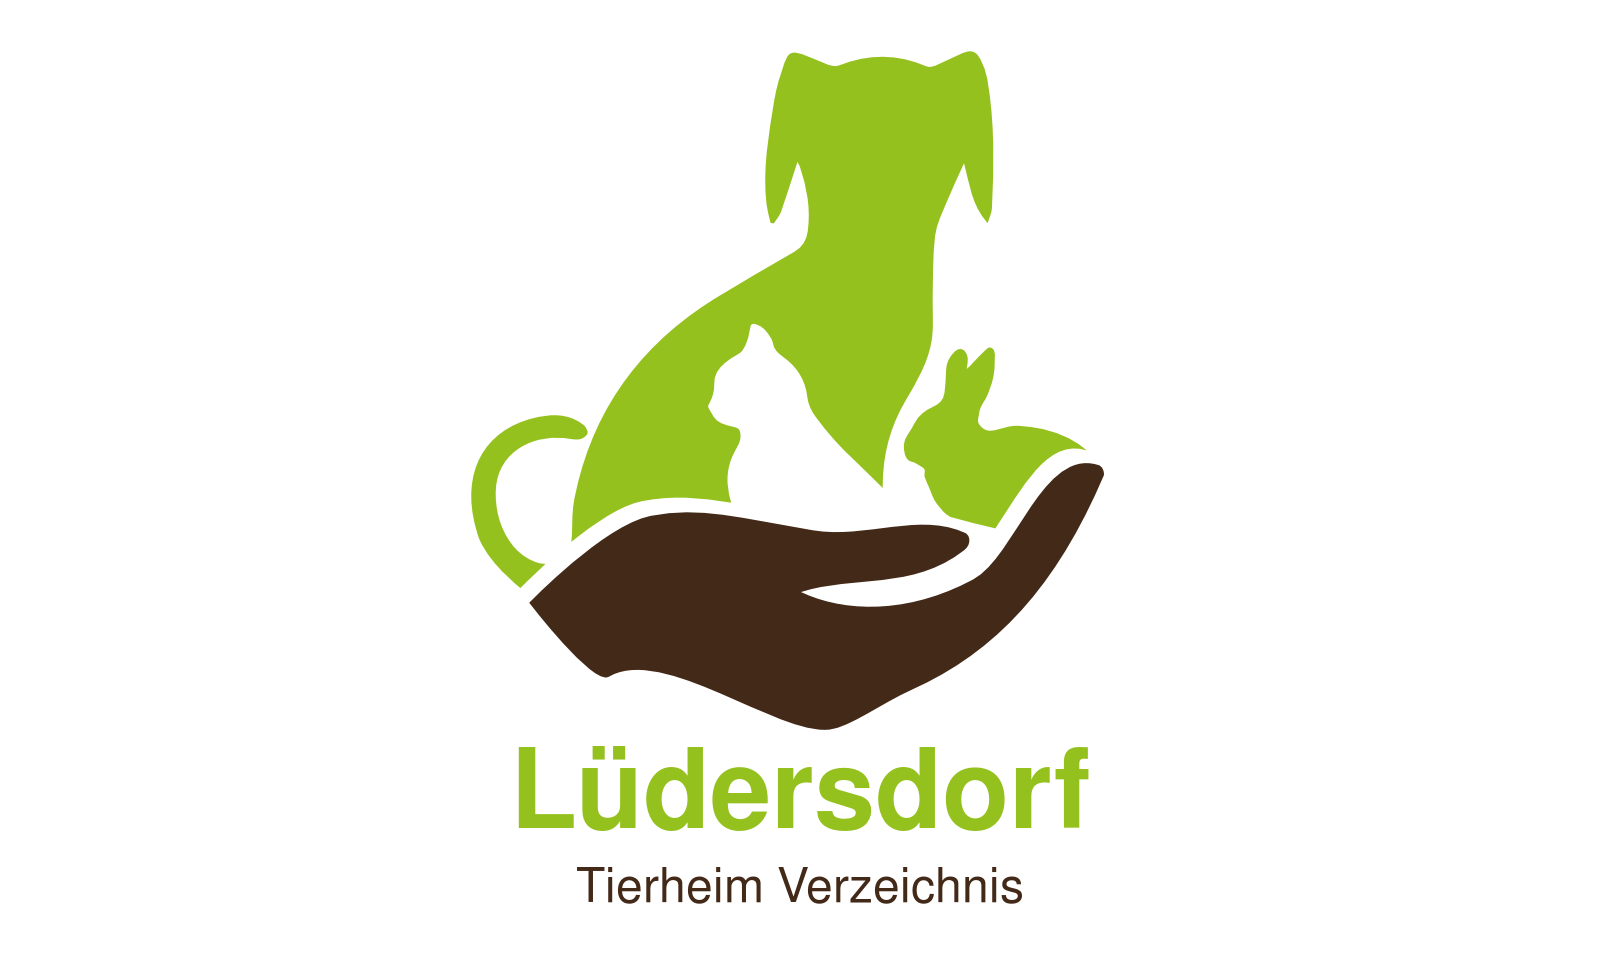 Tierheim Lüdersdorf